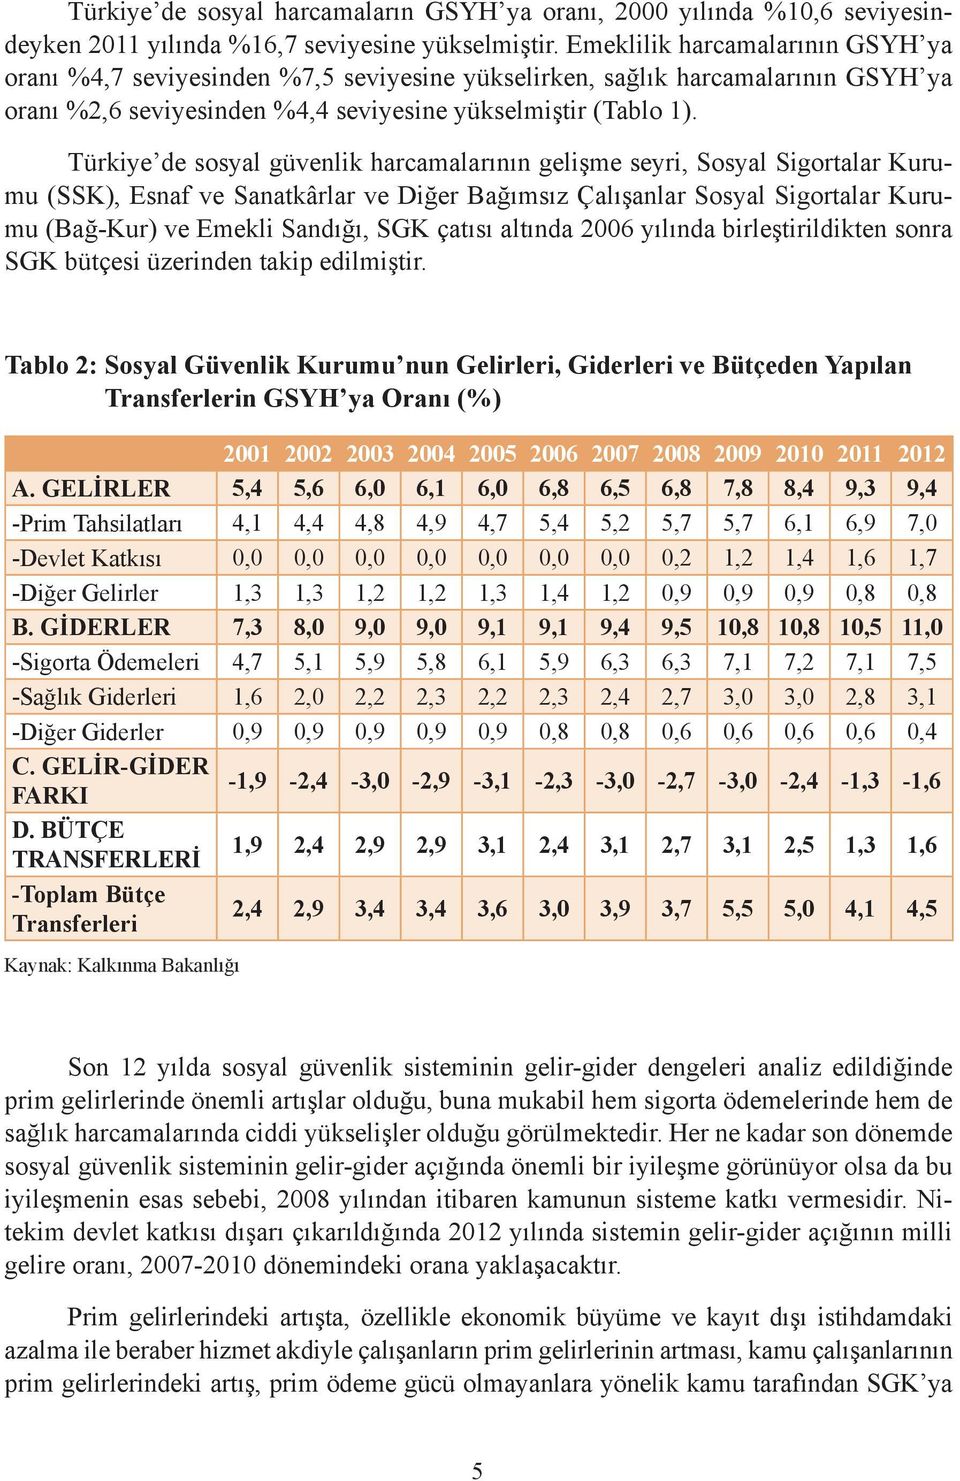 Türkiye de sosyal güvenlik harcamalarının gelişme seyri, Sosyal Sigortalar Kurumu (SSK), Esnaf ve Sanatkârlar ve Diğer Bağımsız Çalışanlar Sosyal Sigortalar Kurumu (Bağ-Kur) ve Emekli Sandığı, SGK